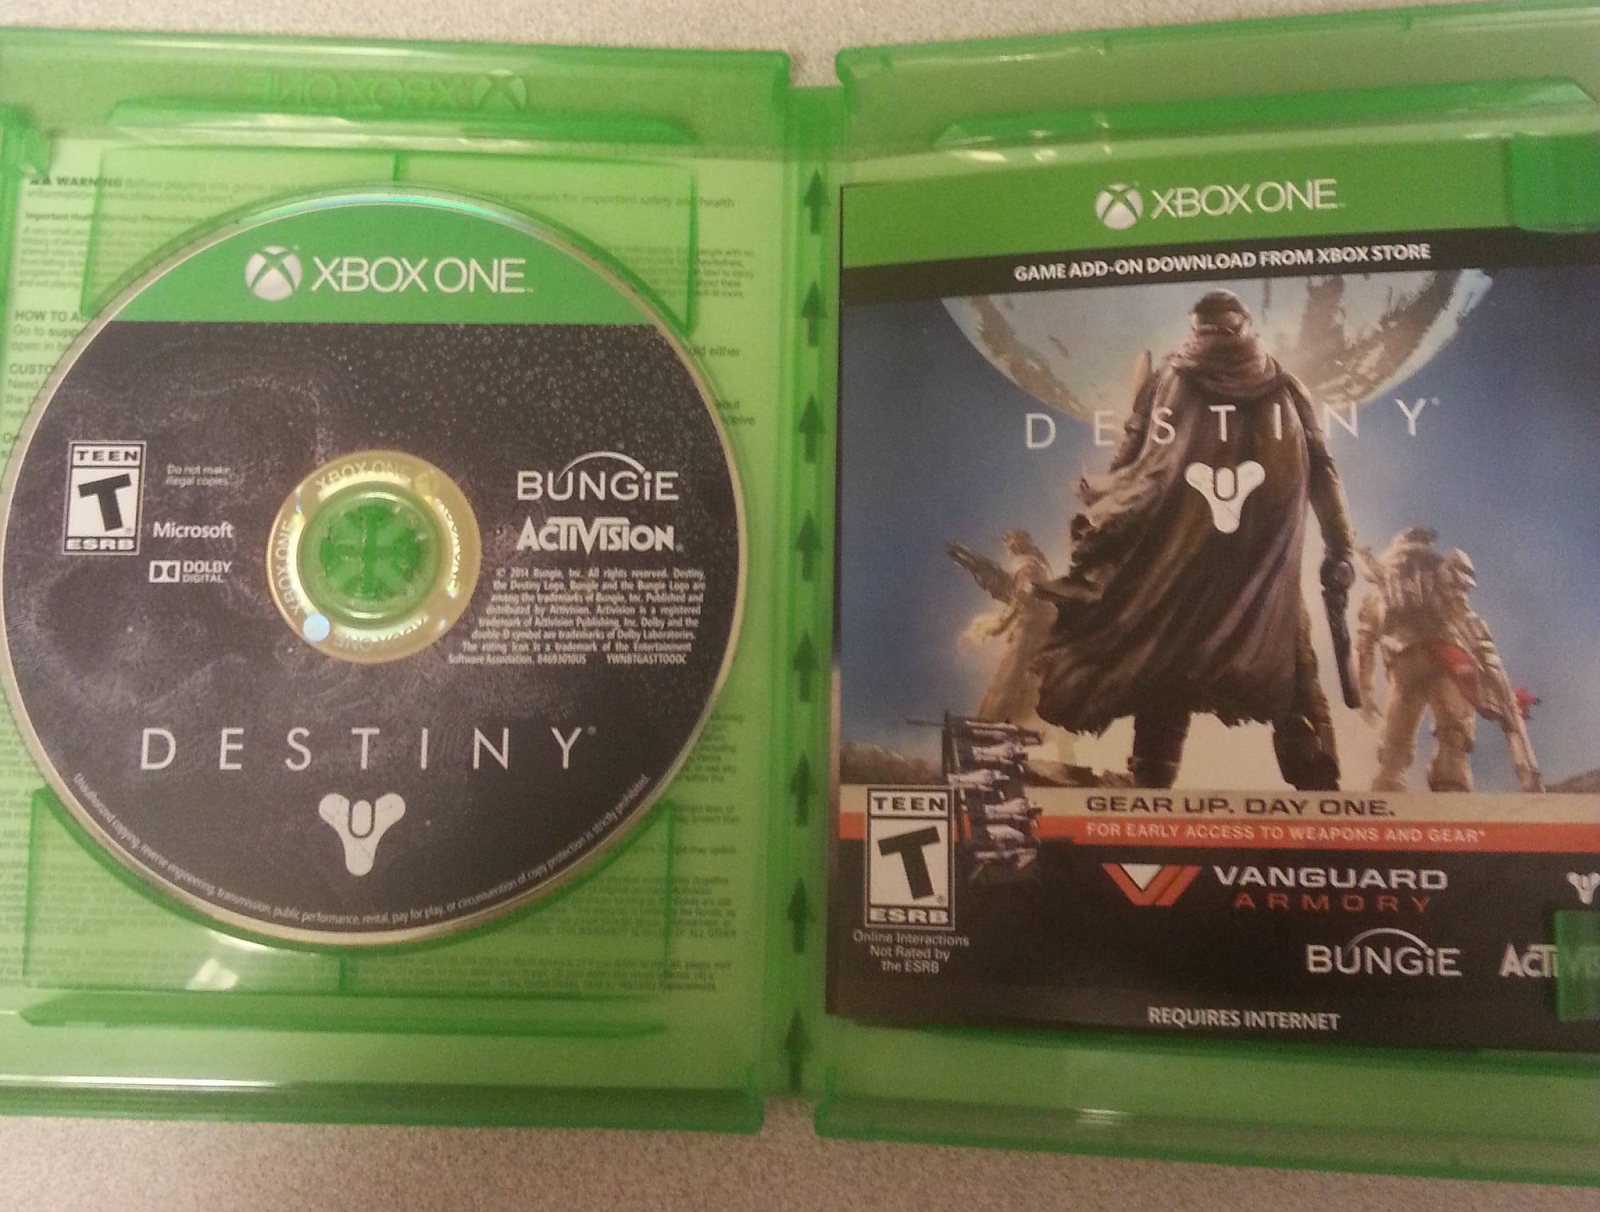 Игра Destiny займет на Xbox One 40 Гб свободного места